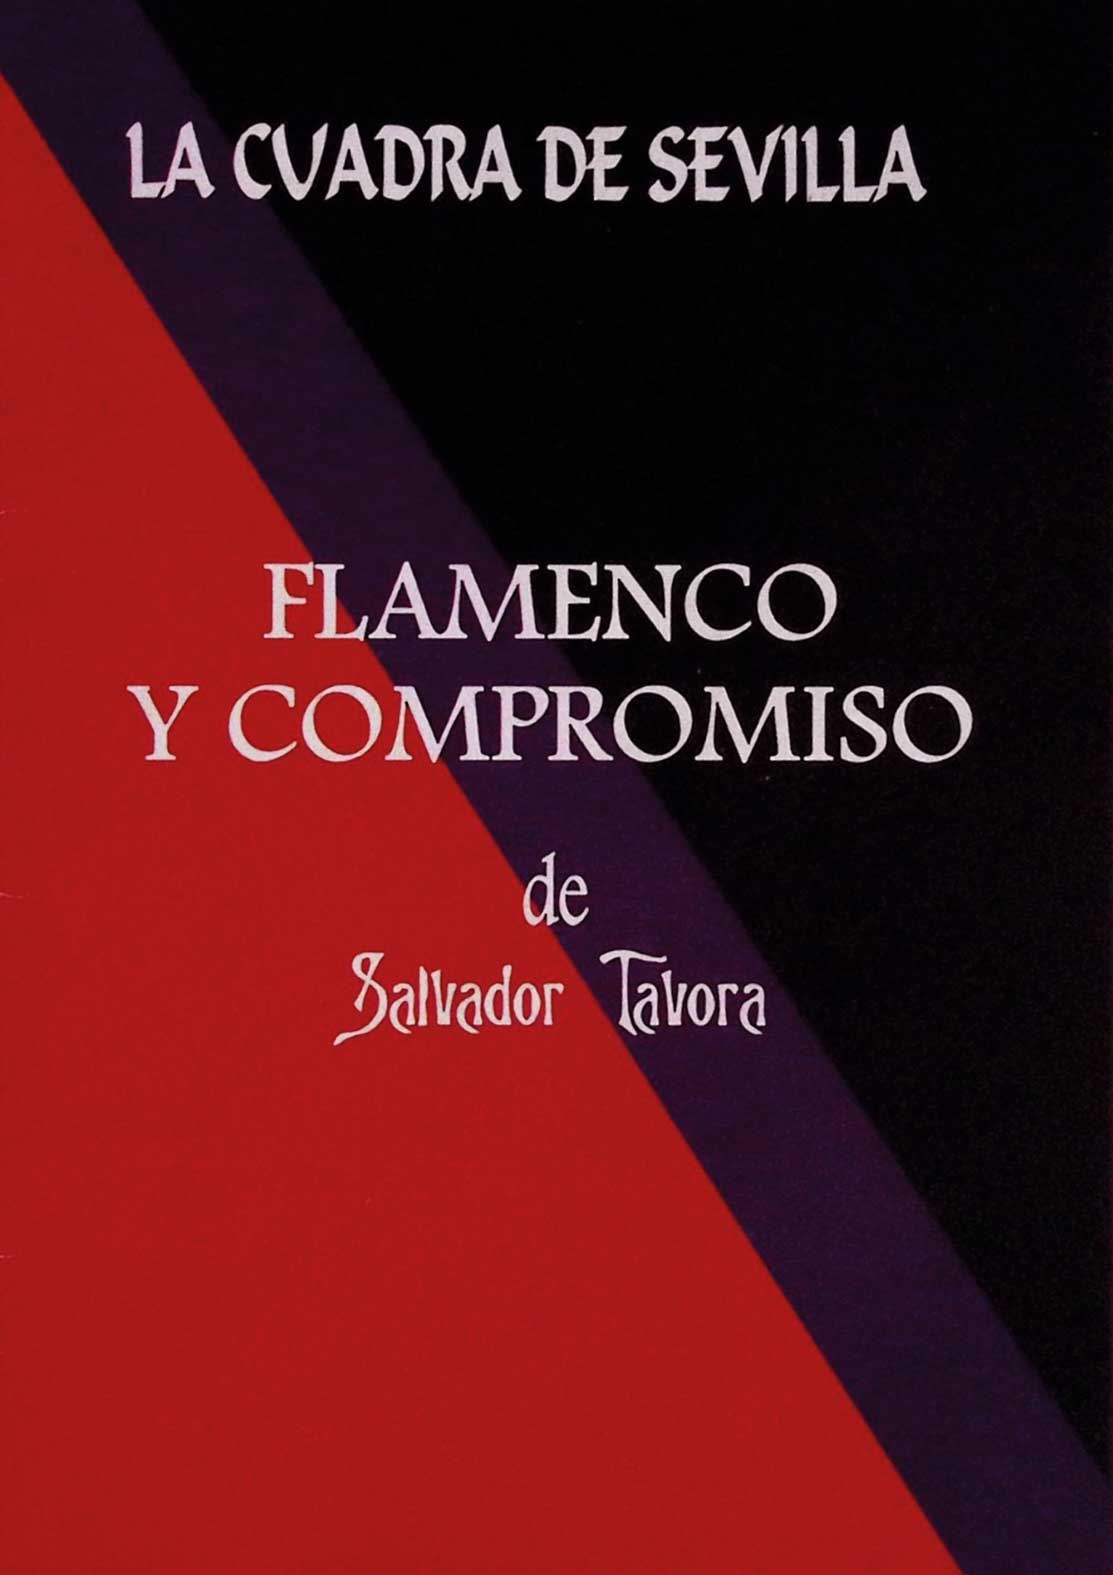 Flamenco y compromiso de Salvador Távora. La Cuadra de Sevilla